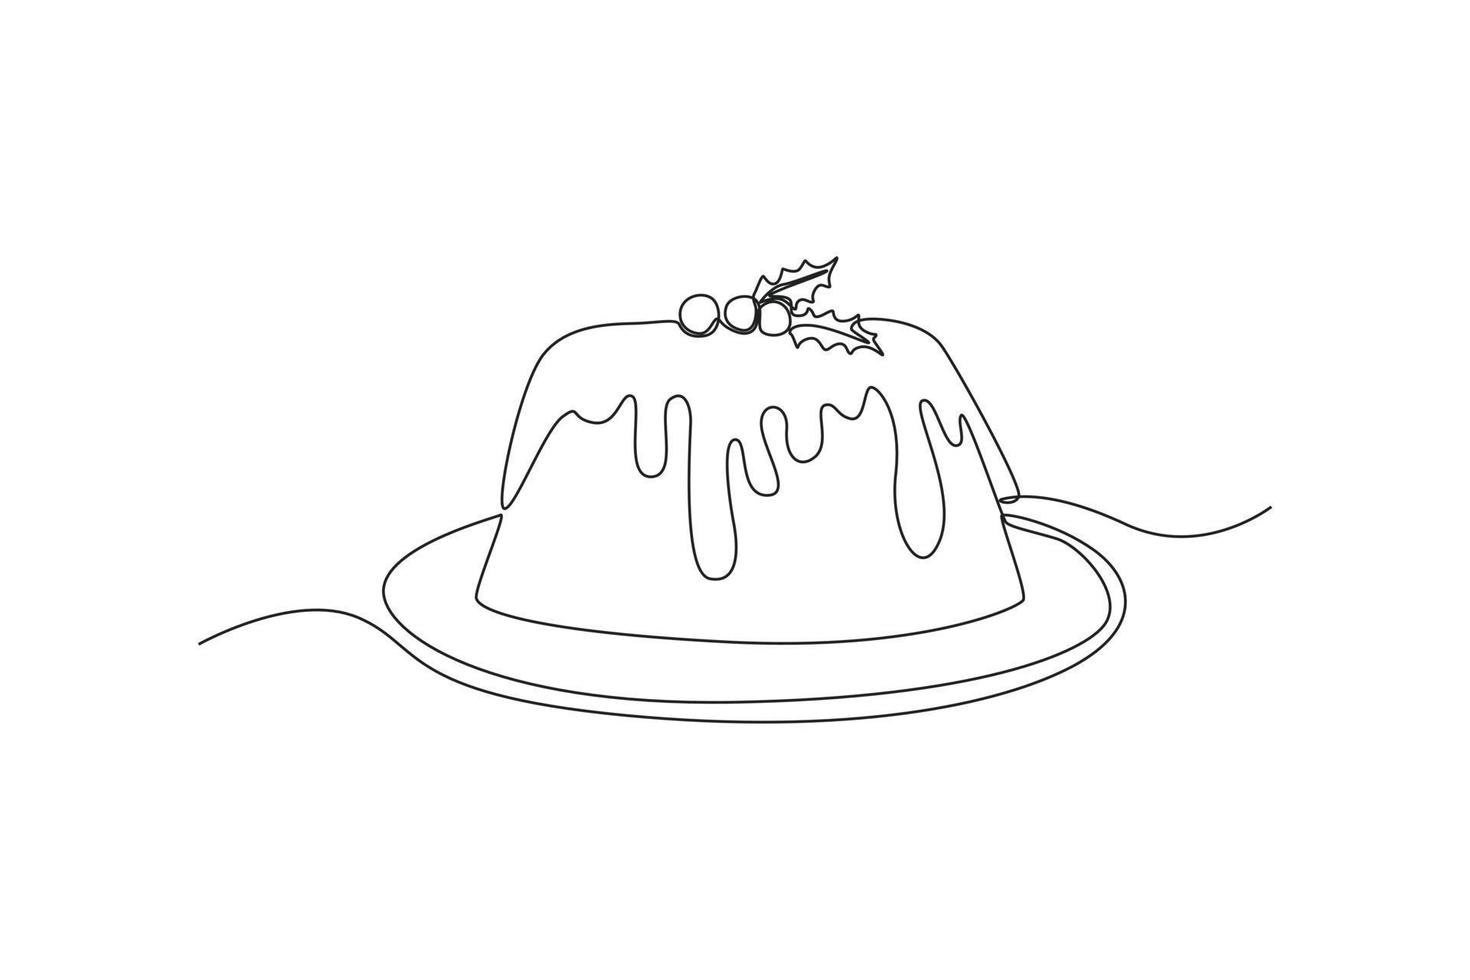 pudim de desenho de linha contínua com baga em um prato. conceito de sobremesa. única linha desenhar desenho ilustração gráfica de vetor. vetor